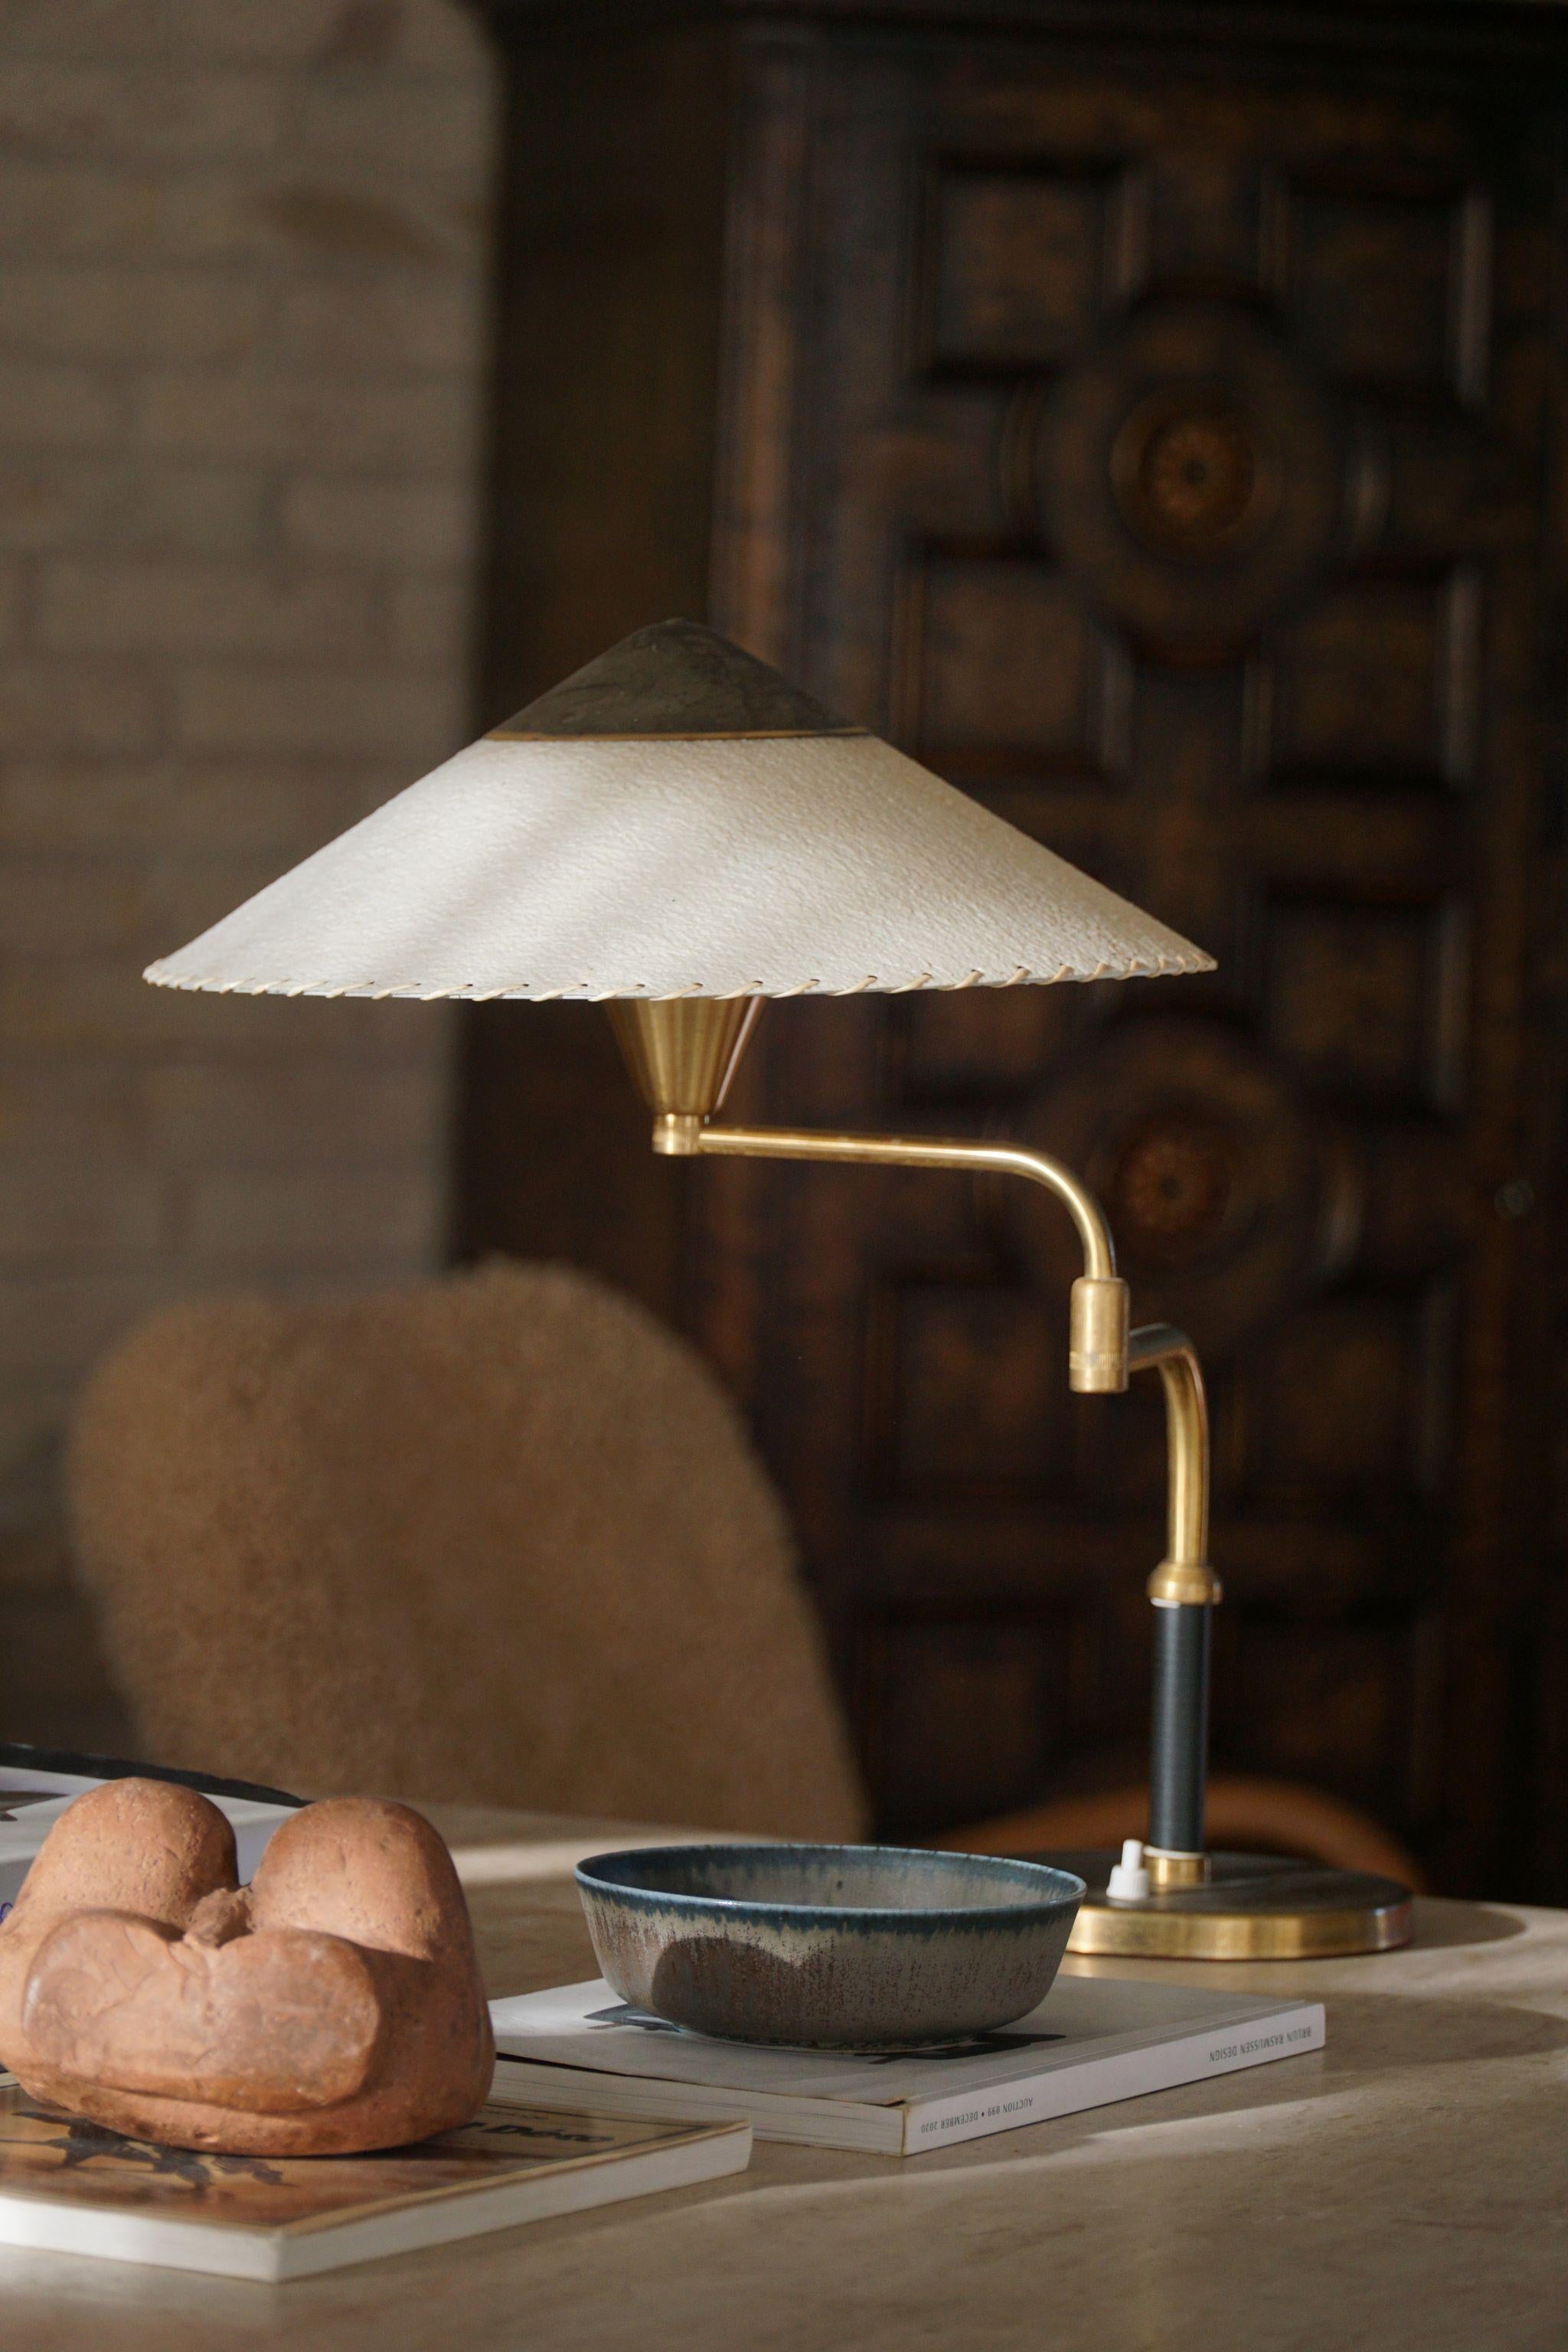 Rare et élégante lampe de table réglable en laiton avec un abat-jour en papier, conçue par Bent Karlby pour la société danoise LYFA dans les années 1950. Fabriquée avec une attention méticuleuse aux détails, cette lampe incarne les lignes épurées,